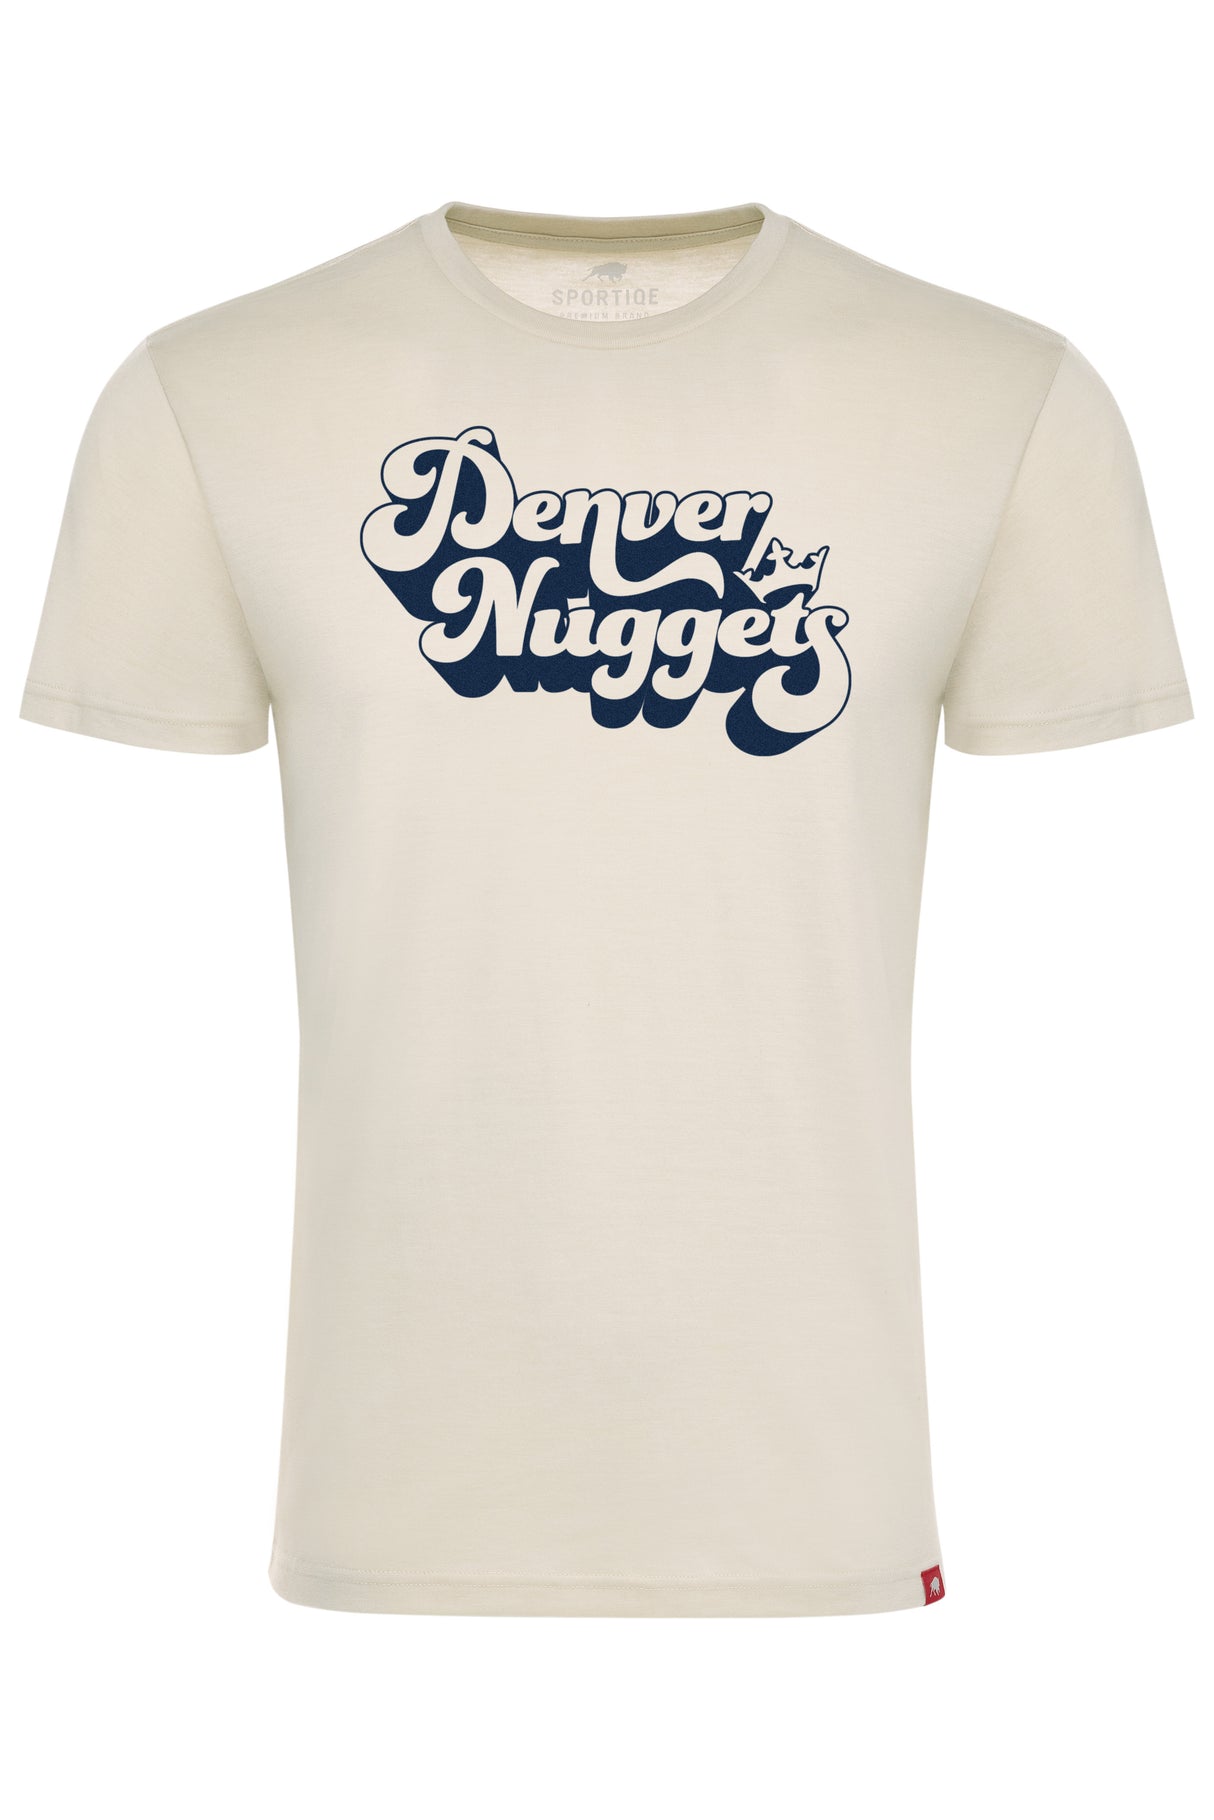 Denver Nuggets Retro Sportiqe Comfy T-Shirt